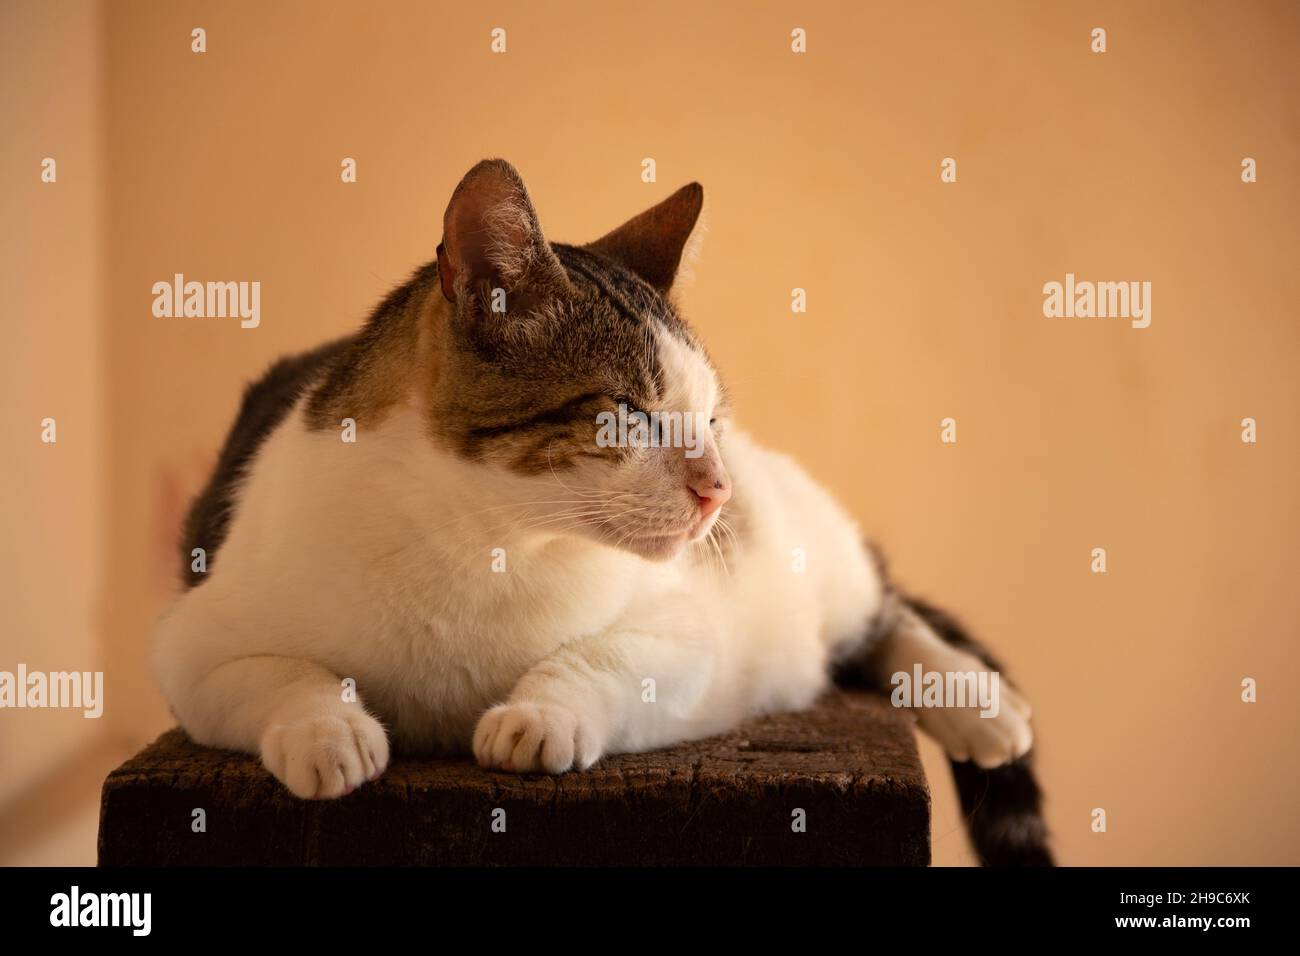 Goias, Brésil – 05 décembre 2021 : un chat tabby couché, reposant, sur une surface en bois avec un fond jaune. Banque D'Images